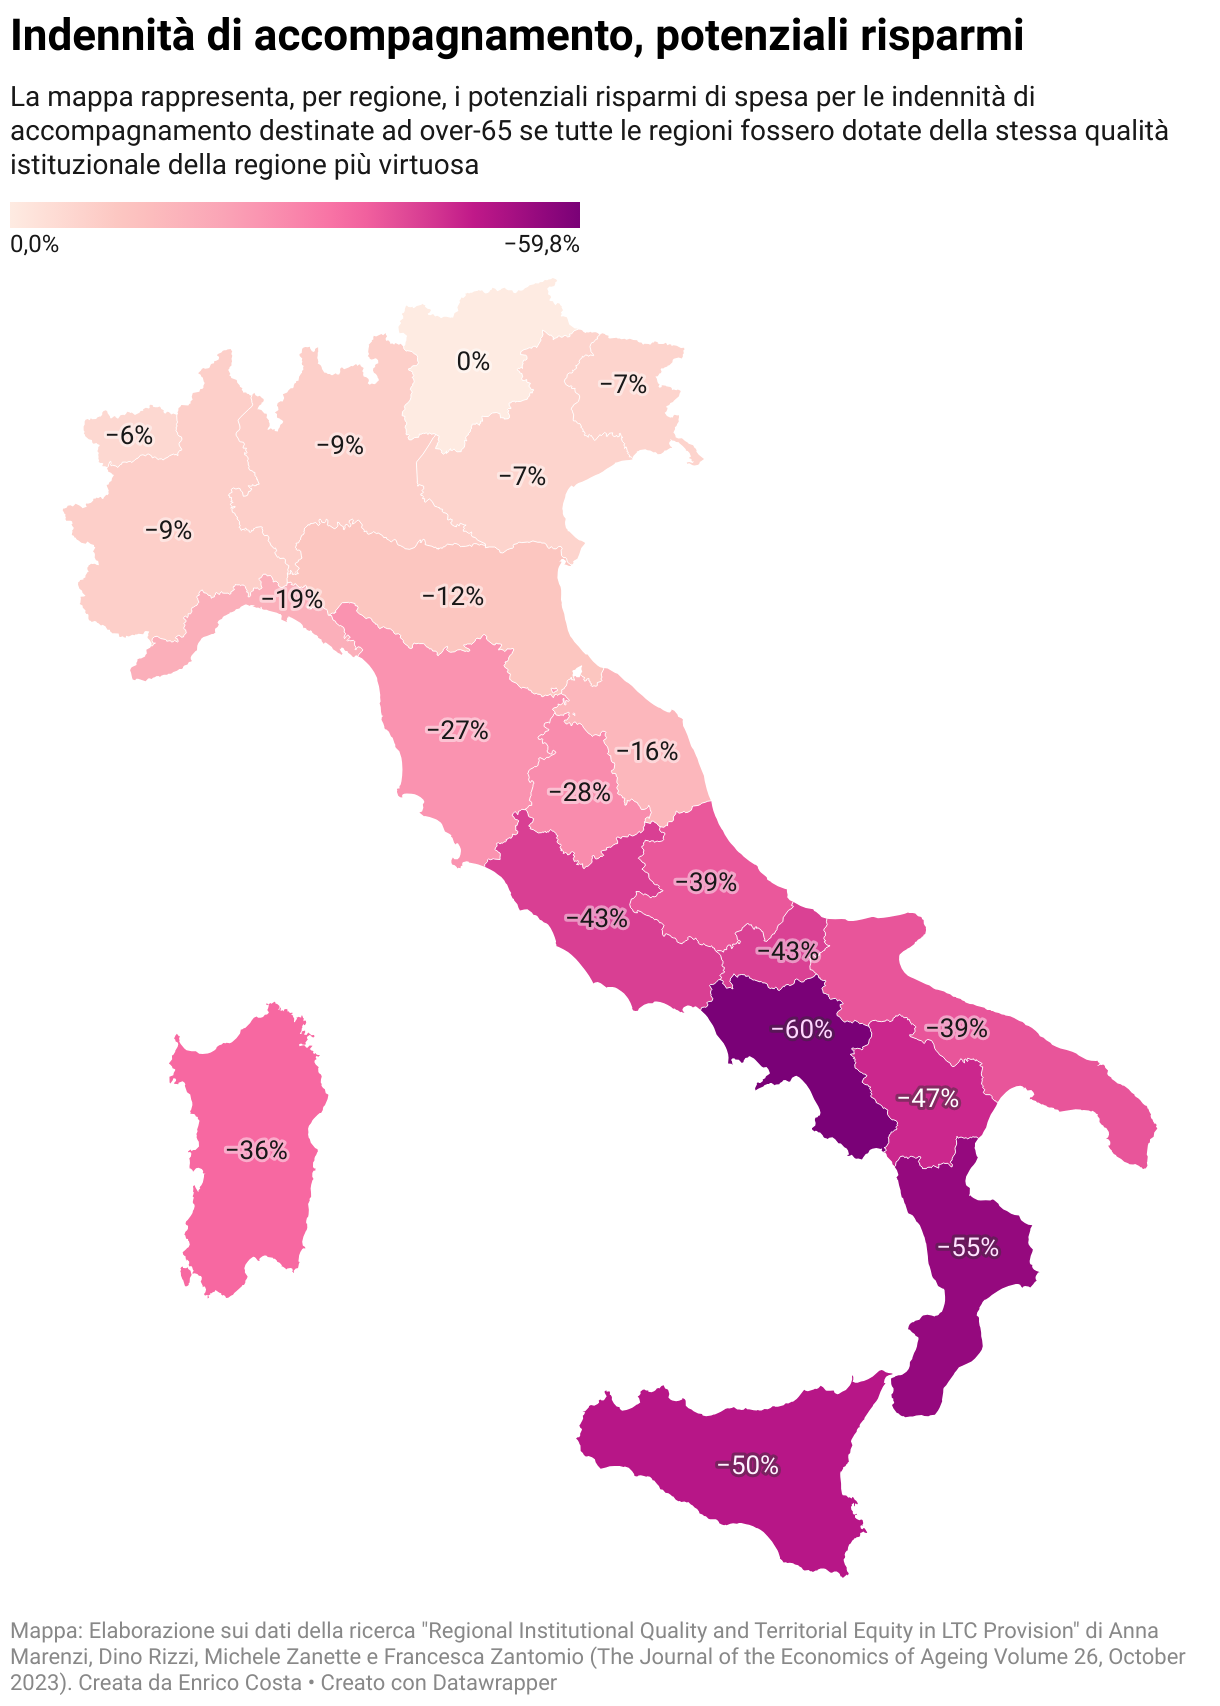 mappa dei possibili risparmi di spesa nelle regioni italiane